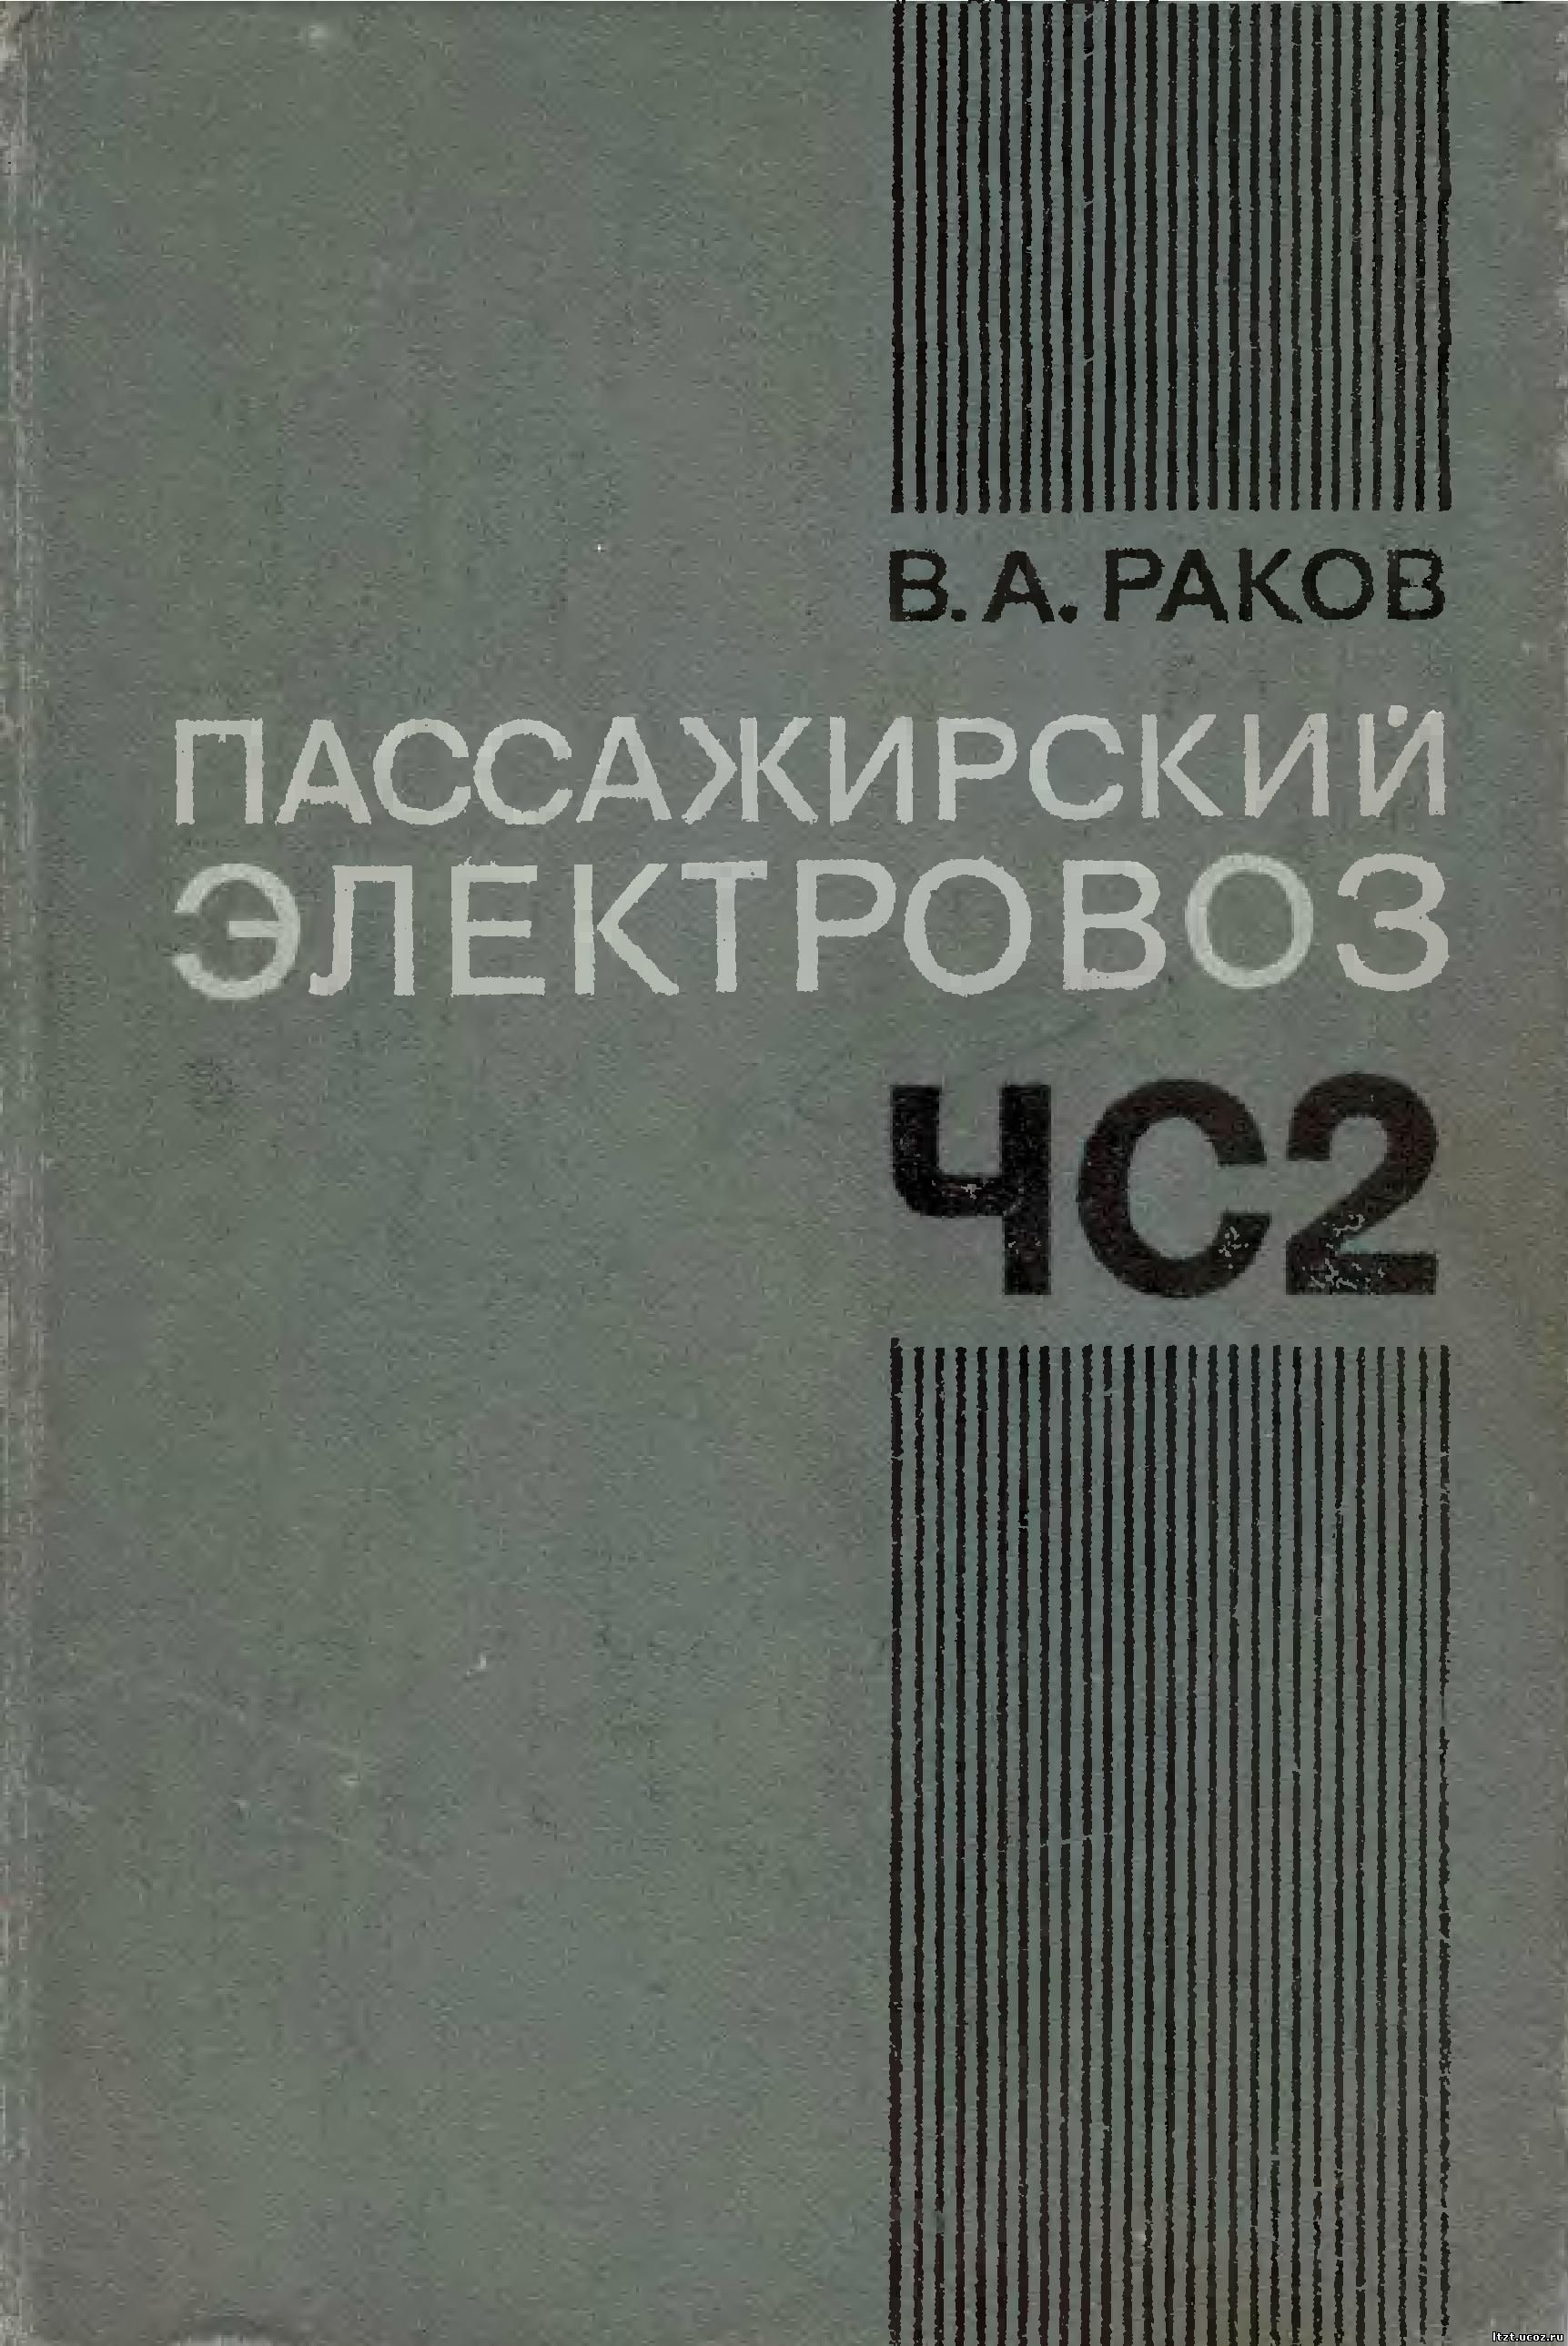 Пассажирский электровоз ЧС2 Издательство: Транспорт Год: 1976 Формат